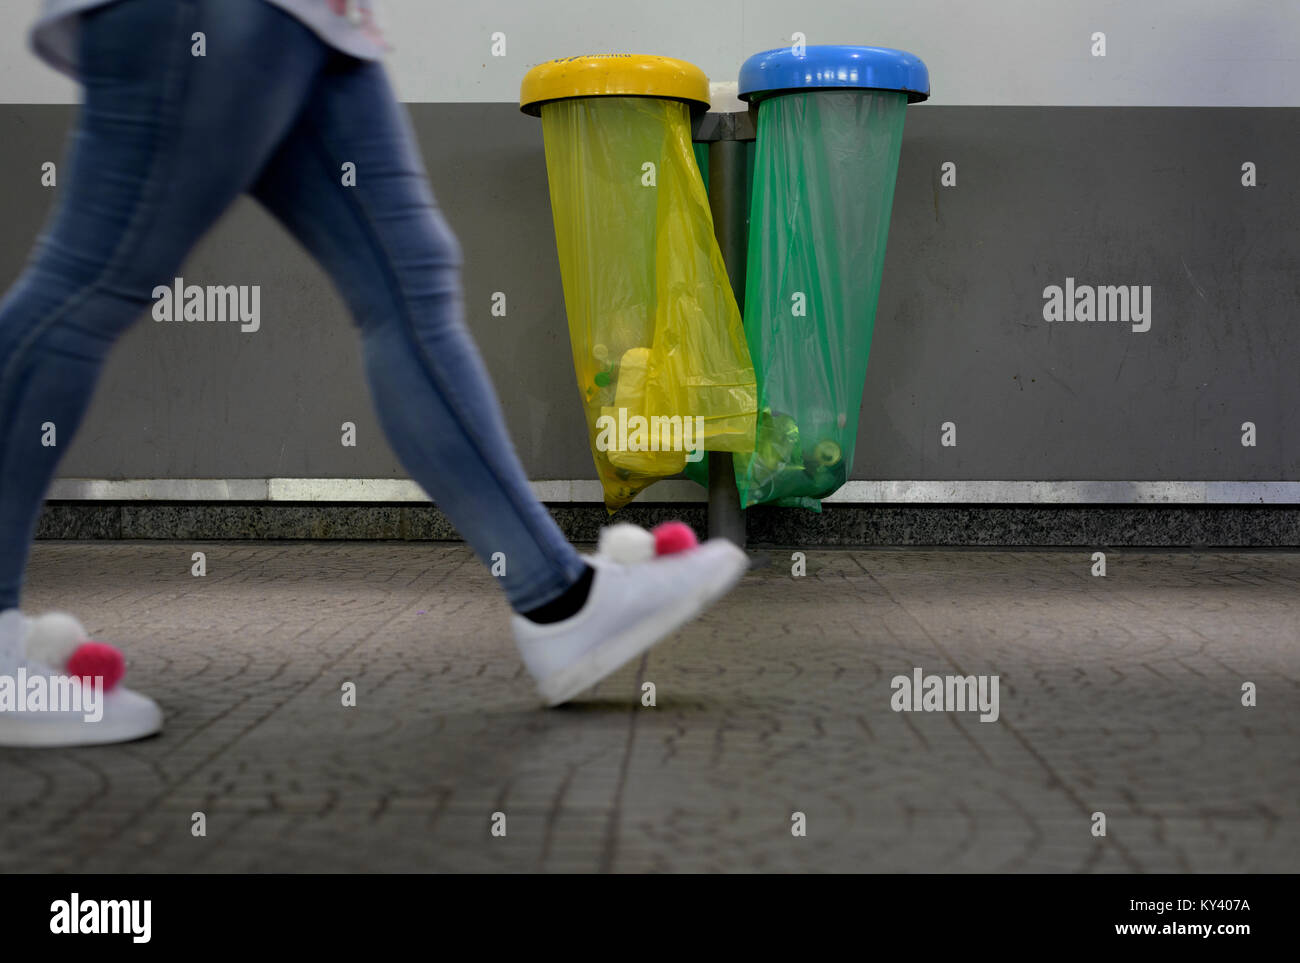 Chaussures pompons colorés près de promenades sacs de déchets Banque D'Images